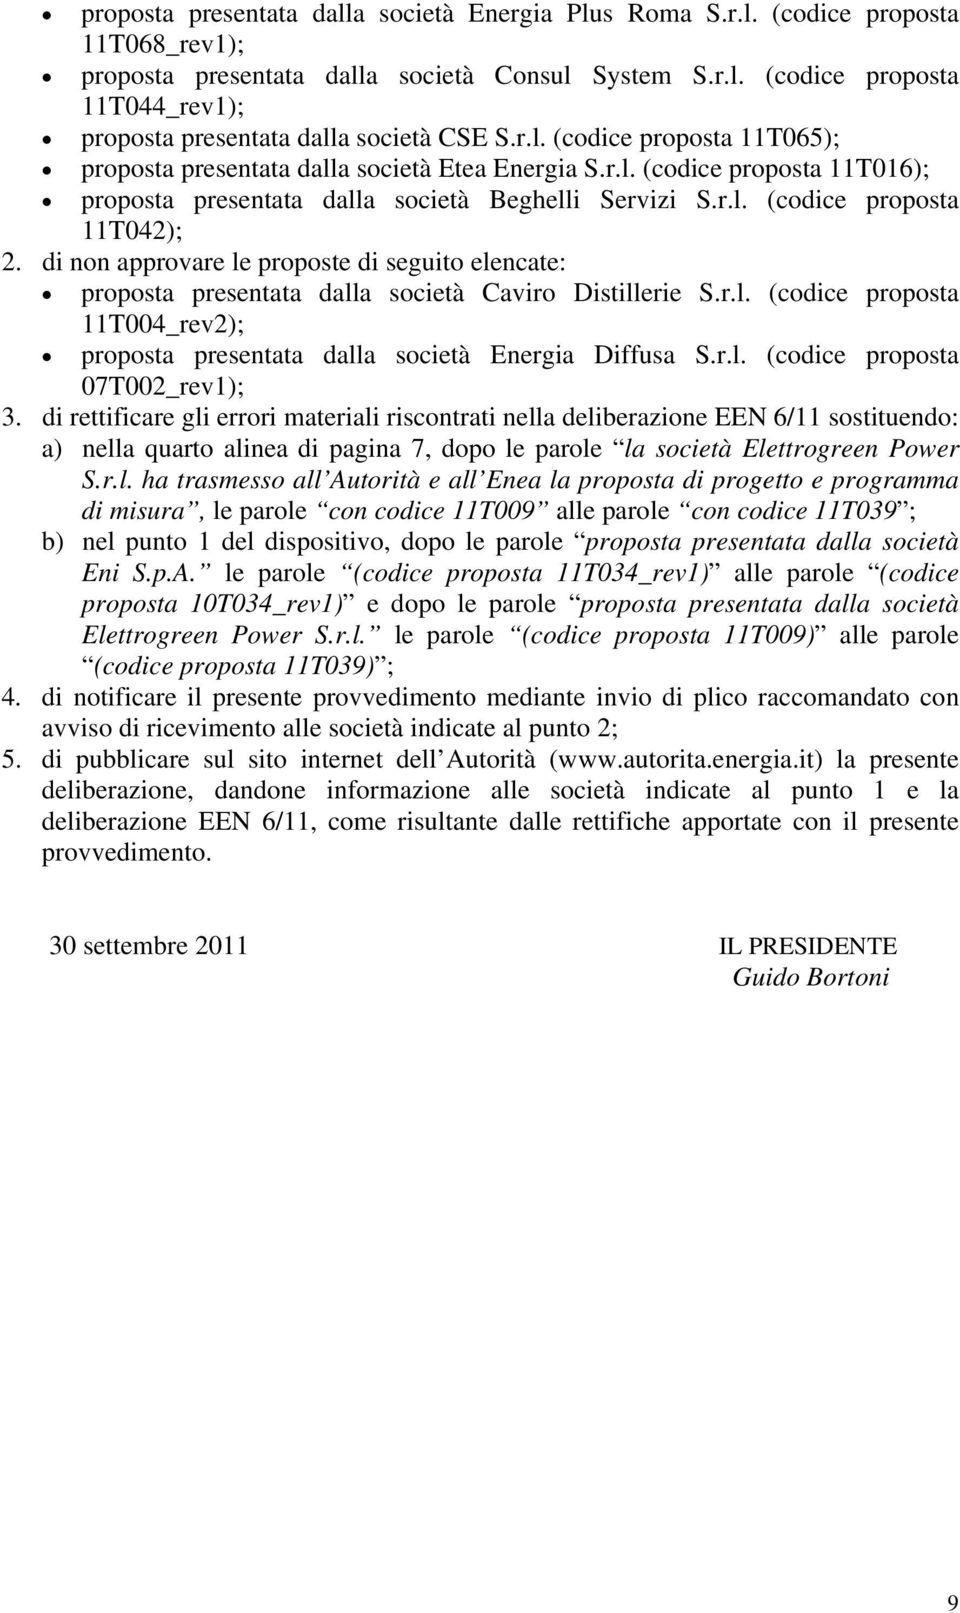 di non approvare le proposte di seguito elencate: proposta presentata dalla società Caviro Distillerie S.r.l. (codice proposta 11T004_rev2); proposta presentata dalla società Energia Diffusa S.r.l. (codice proposta 07T002_rev1); 3.